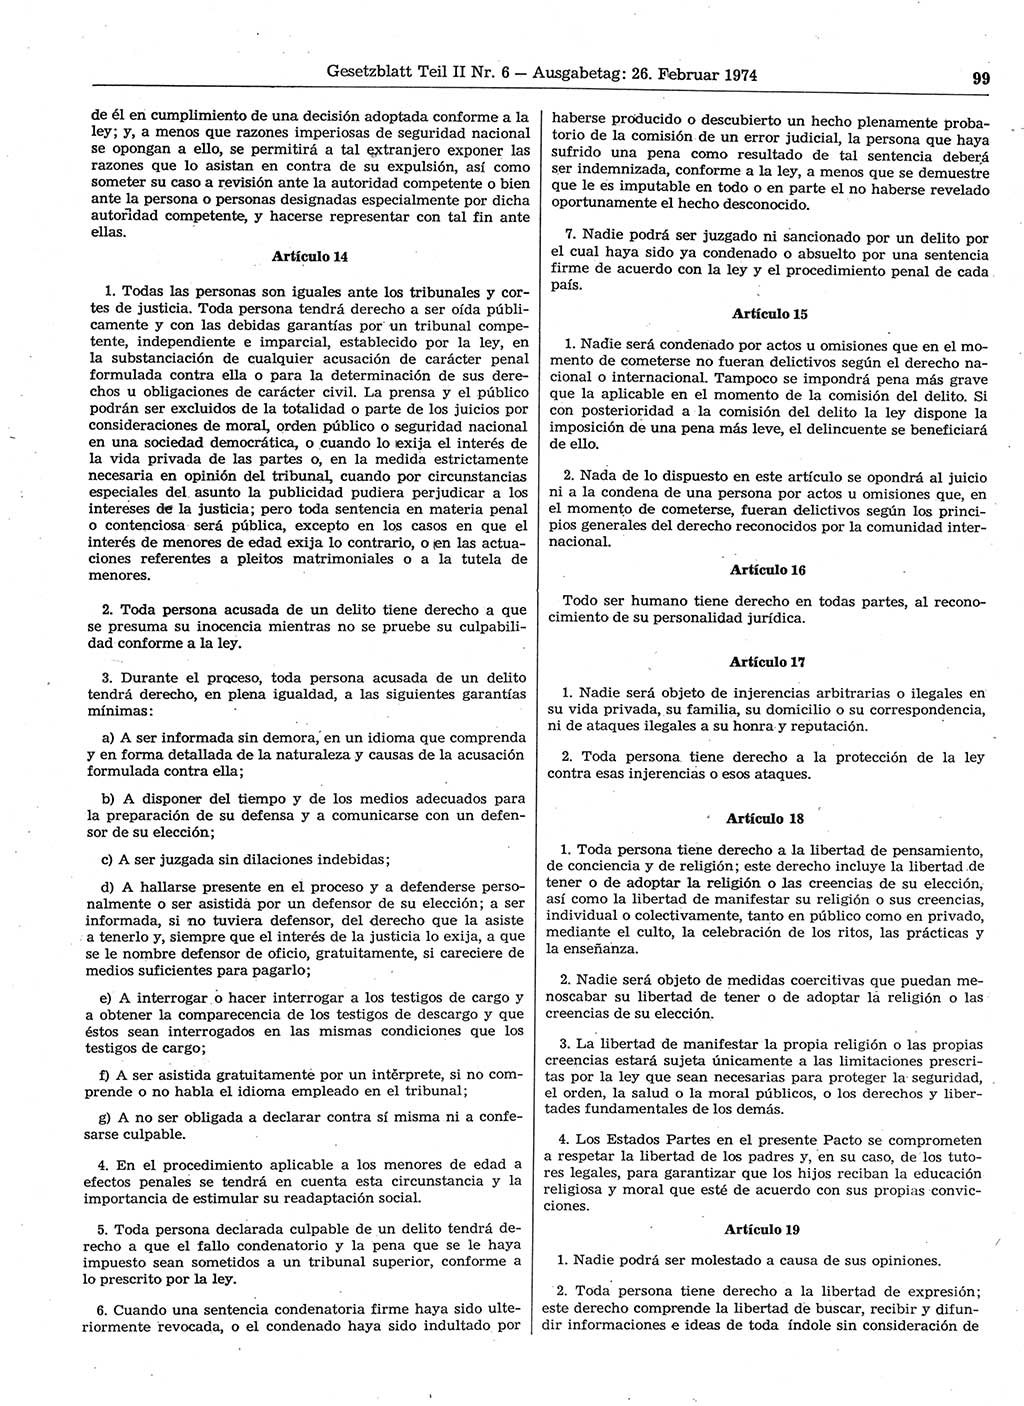 Gesetzblatt (GBl.) der Deutschen Demokratischen Republik (DDR) Teil ⅠⅠ 1974, Seite 99 (GBl. DDR ⅠⅠ 1974, S. 99)